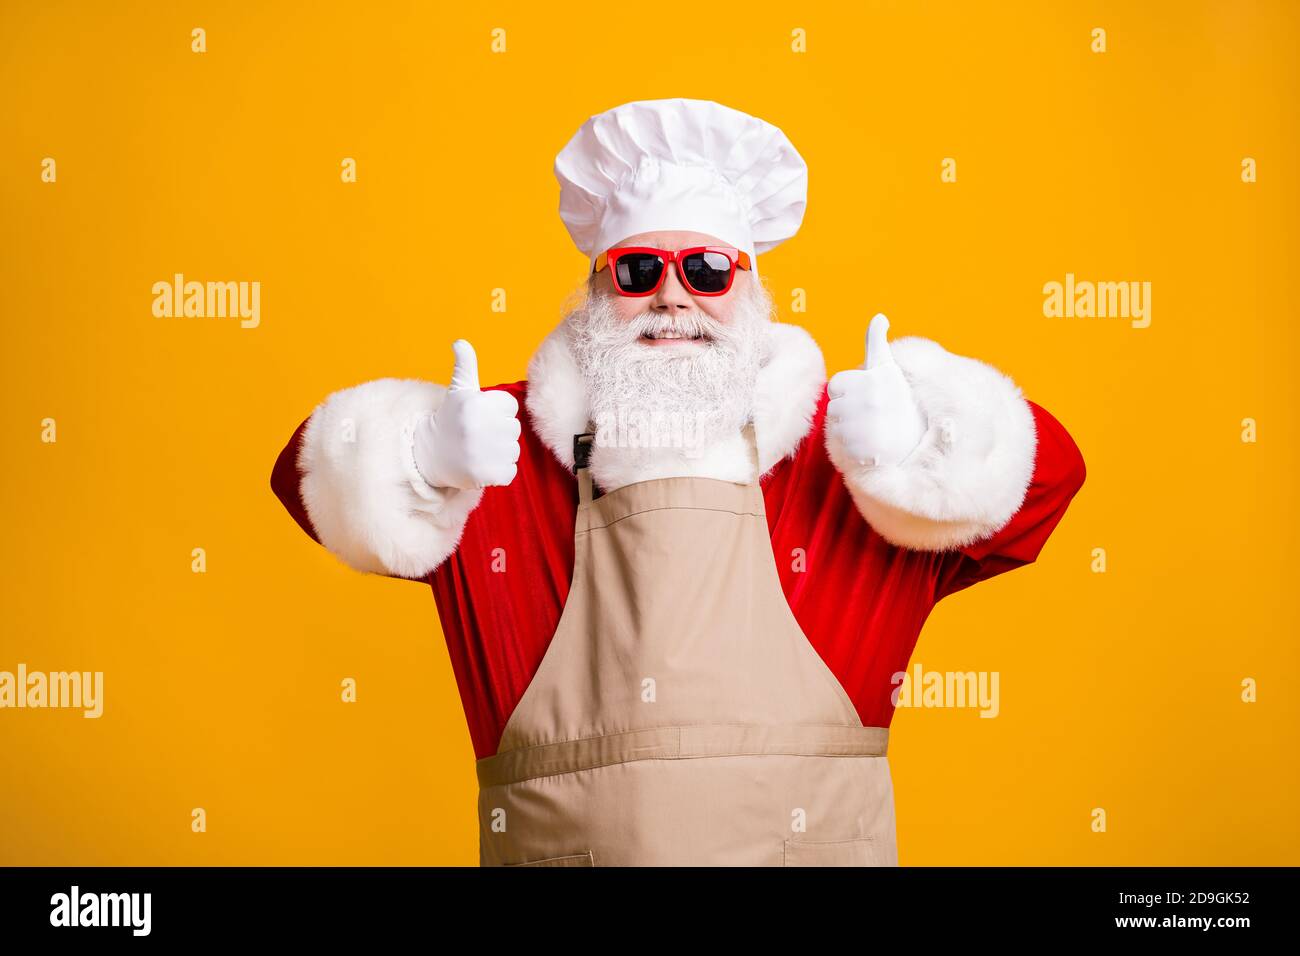 Photo du père noël avec barbe dans le spectacle de cuisinier du chef  affiche de noël noël noël holly cuisiner repas manger vêtements de  nourriture tablier de lunettes de soleil éclat brillant